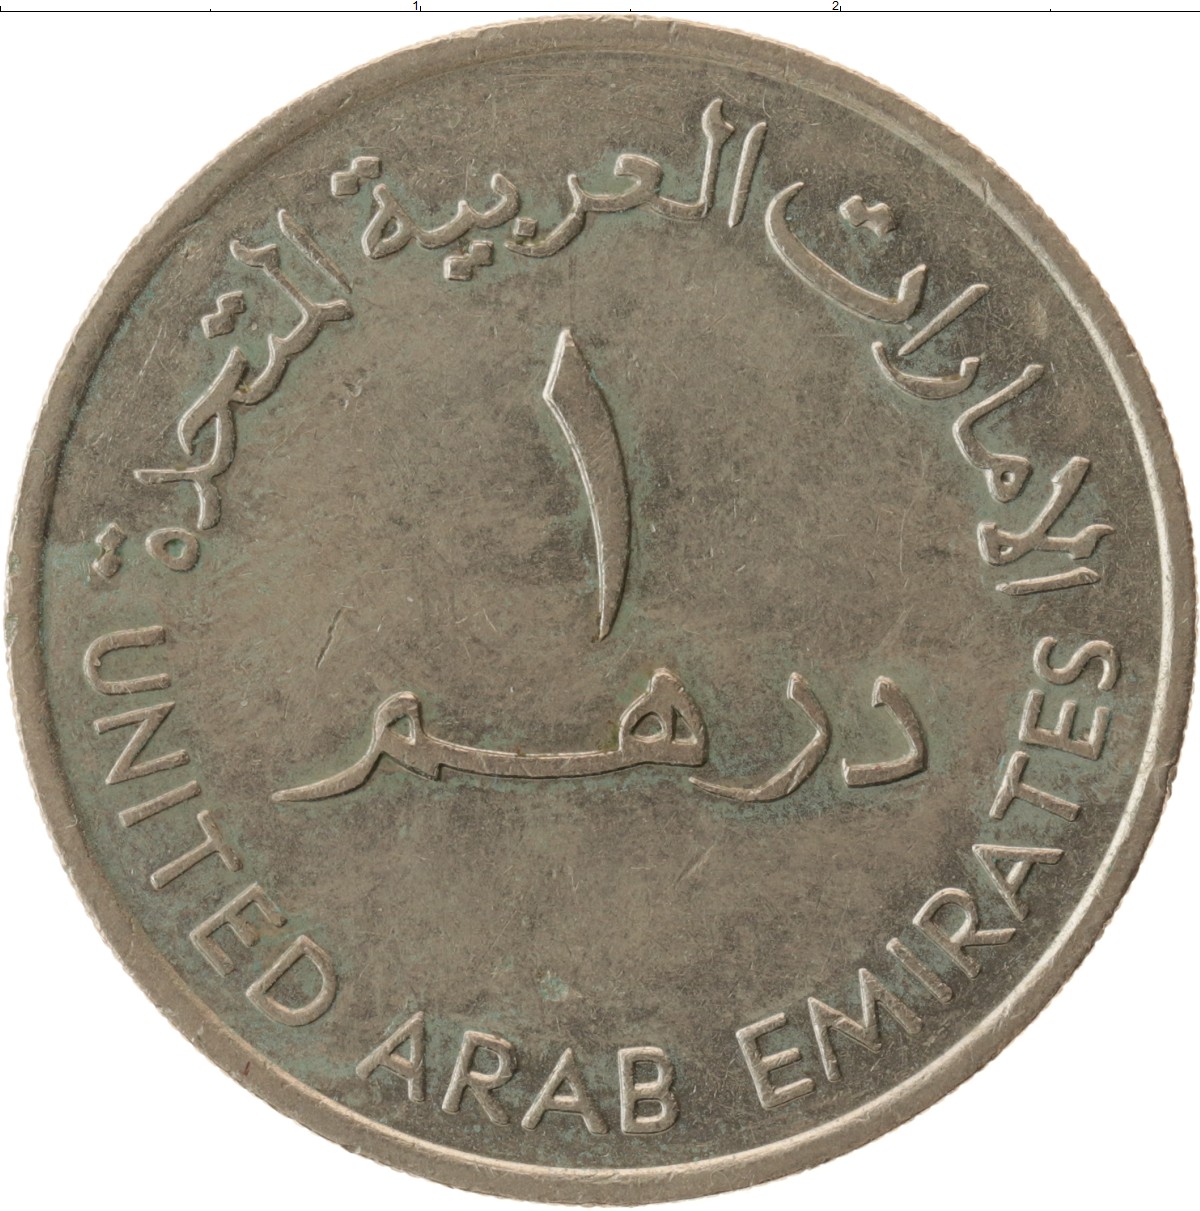 1 дирхам это сколько. Арабская монета 1 дирхам. Монеты арабских Эмиратов 1 дирхам. ОАЭ 1 дирхам 1989. Арабские монеты номинал.